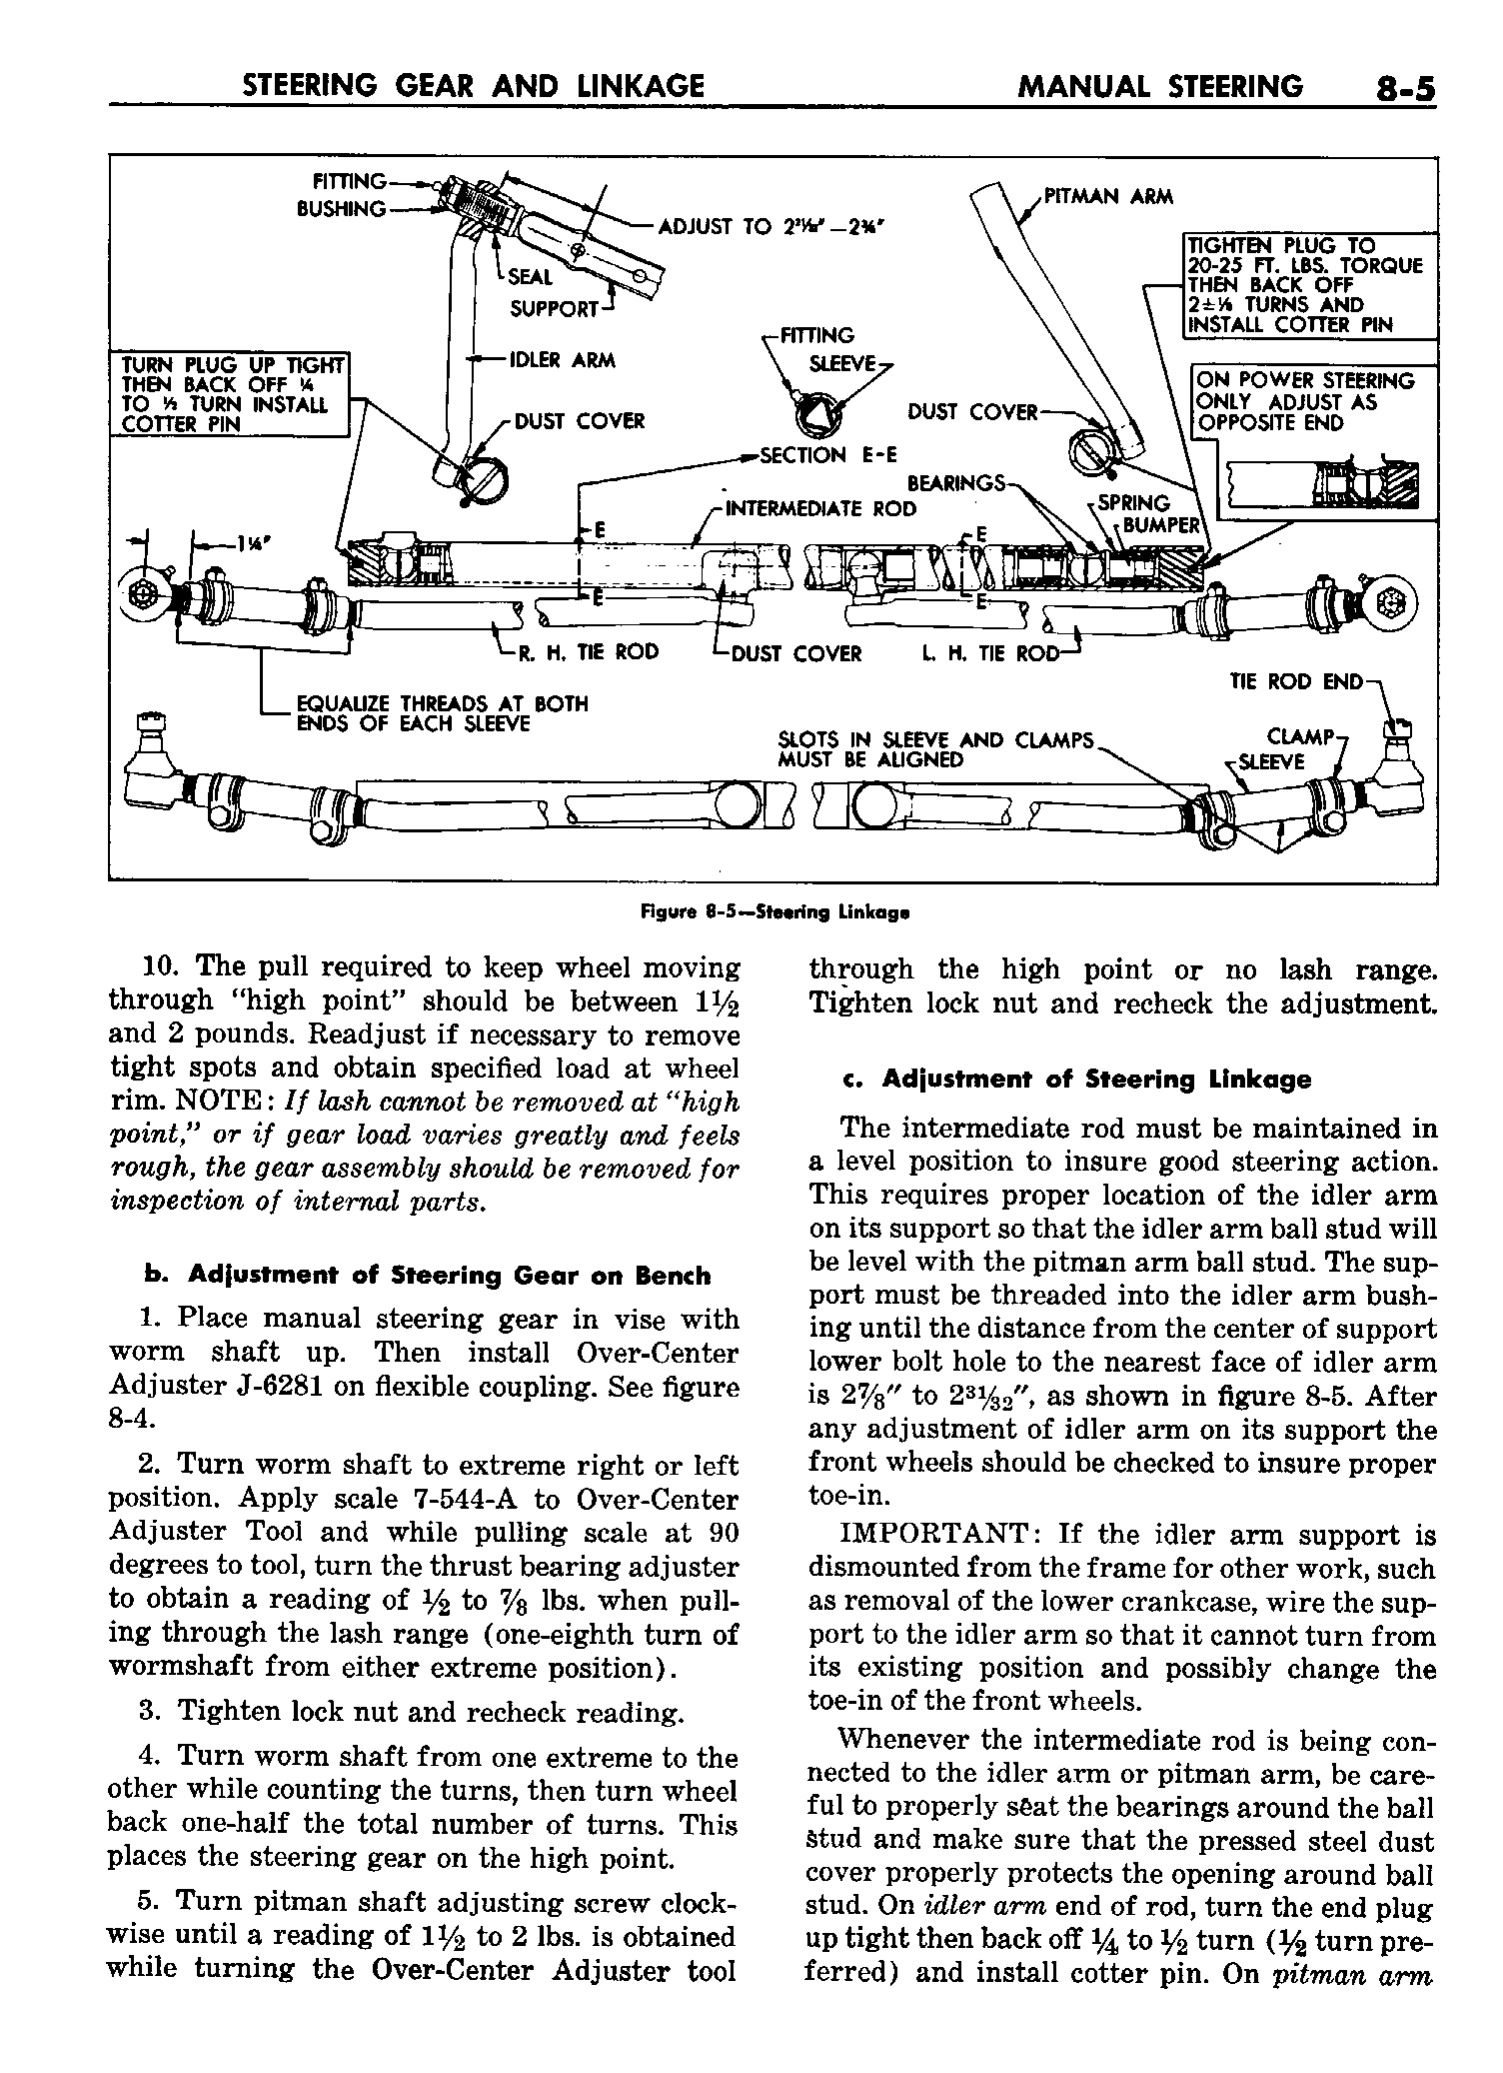 n_09 1958 Buick Shop Manual - Steering_5.jpg